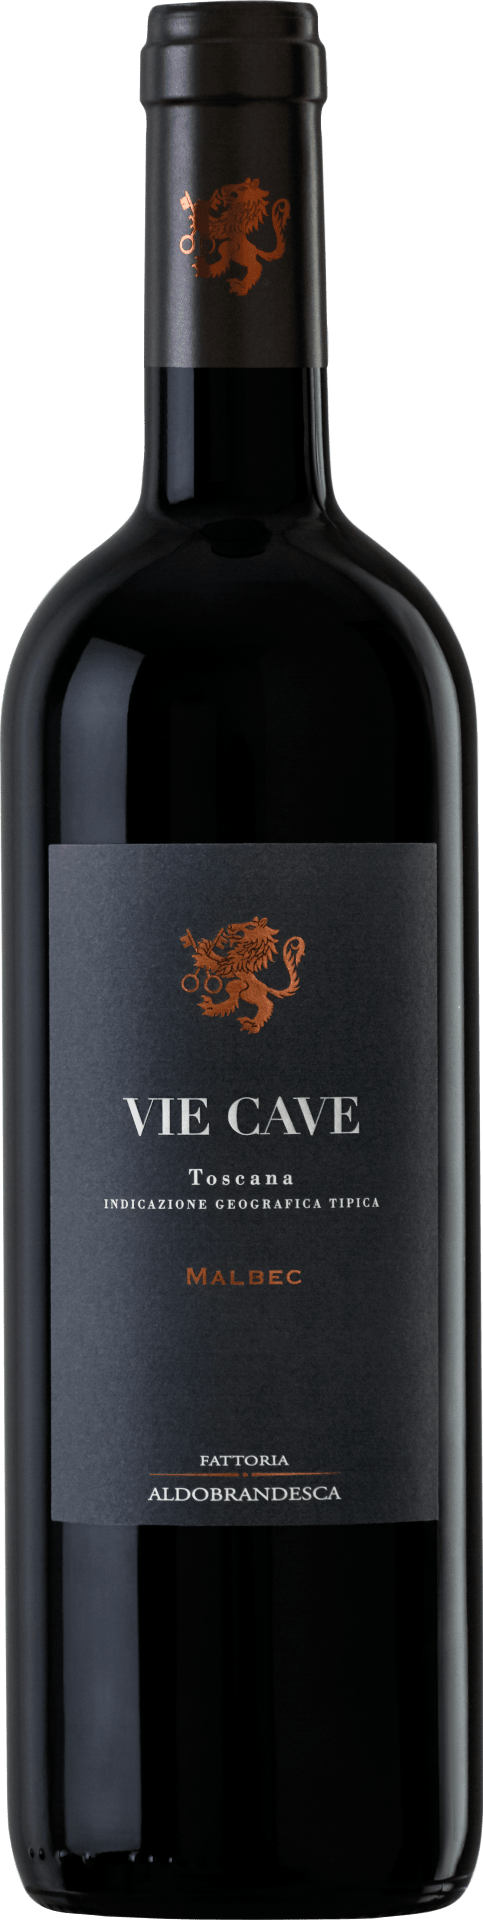 Vie Cave Toscana IGT